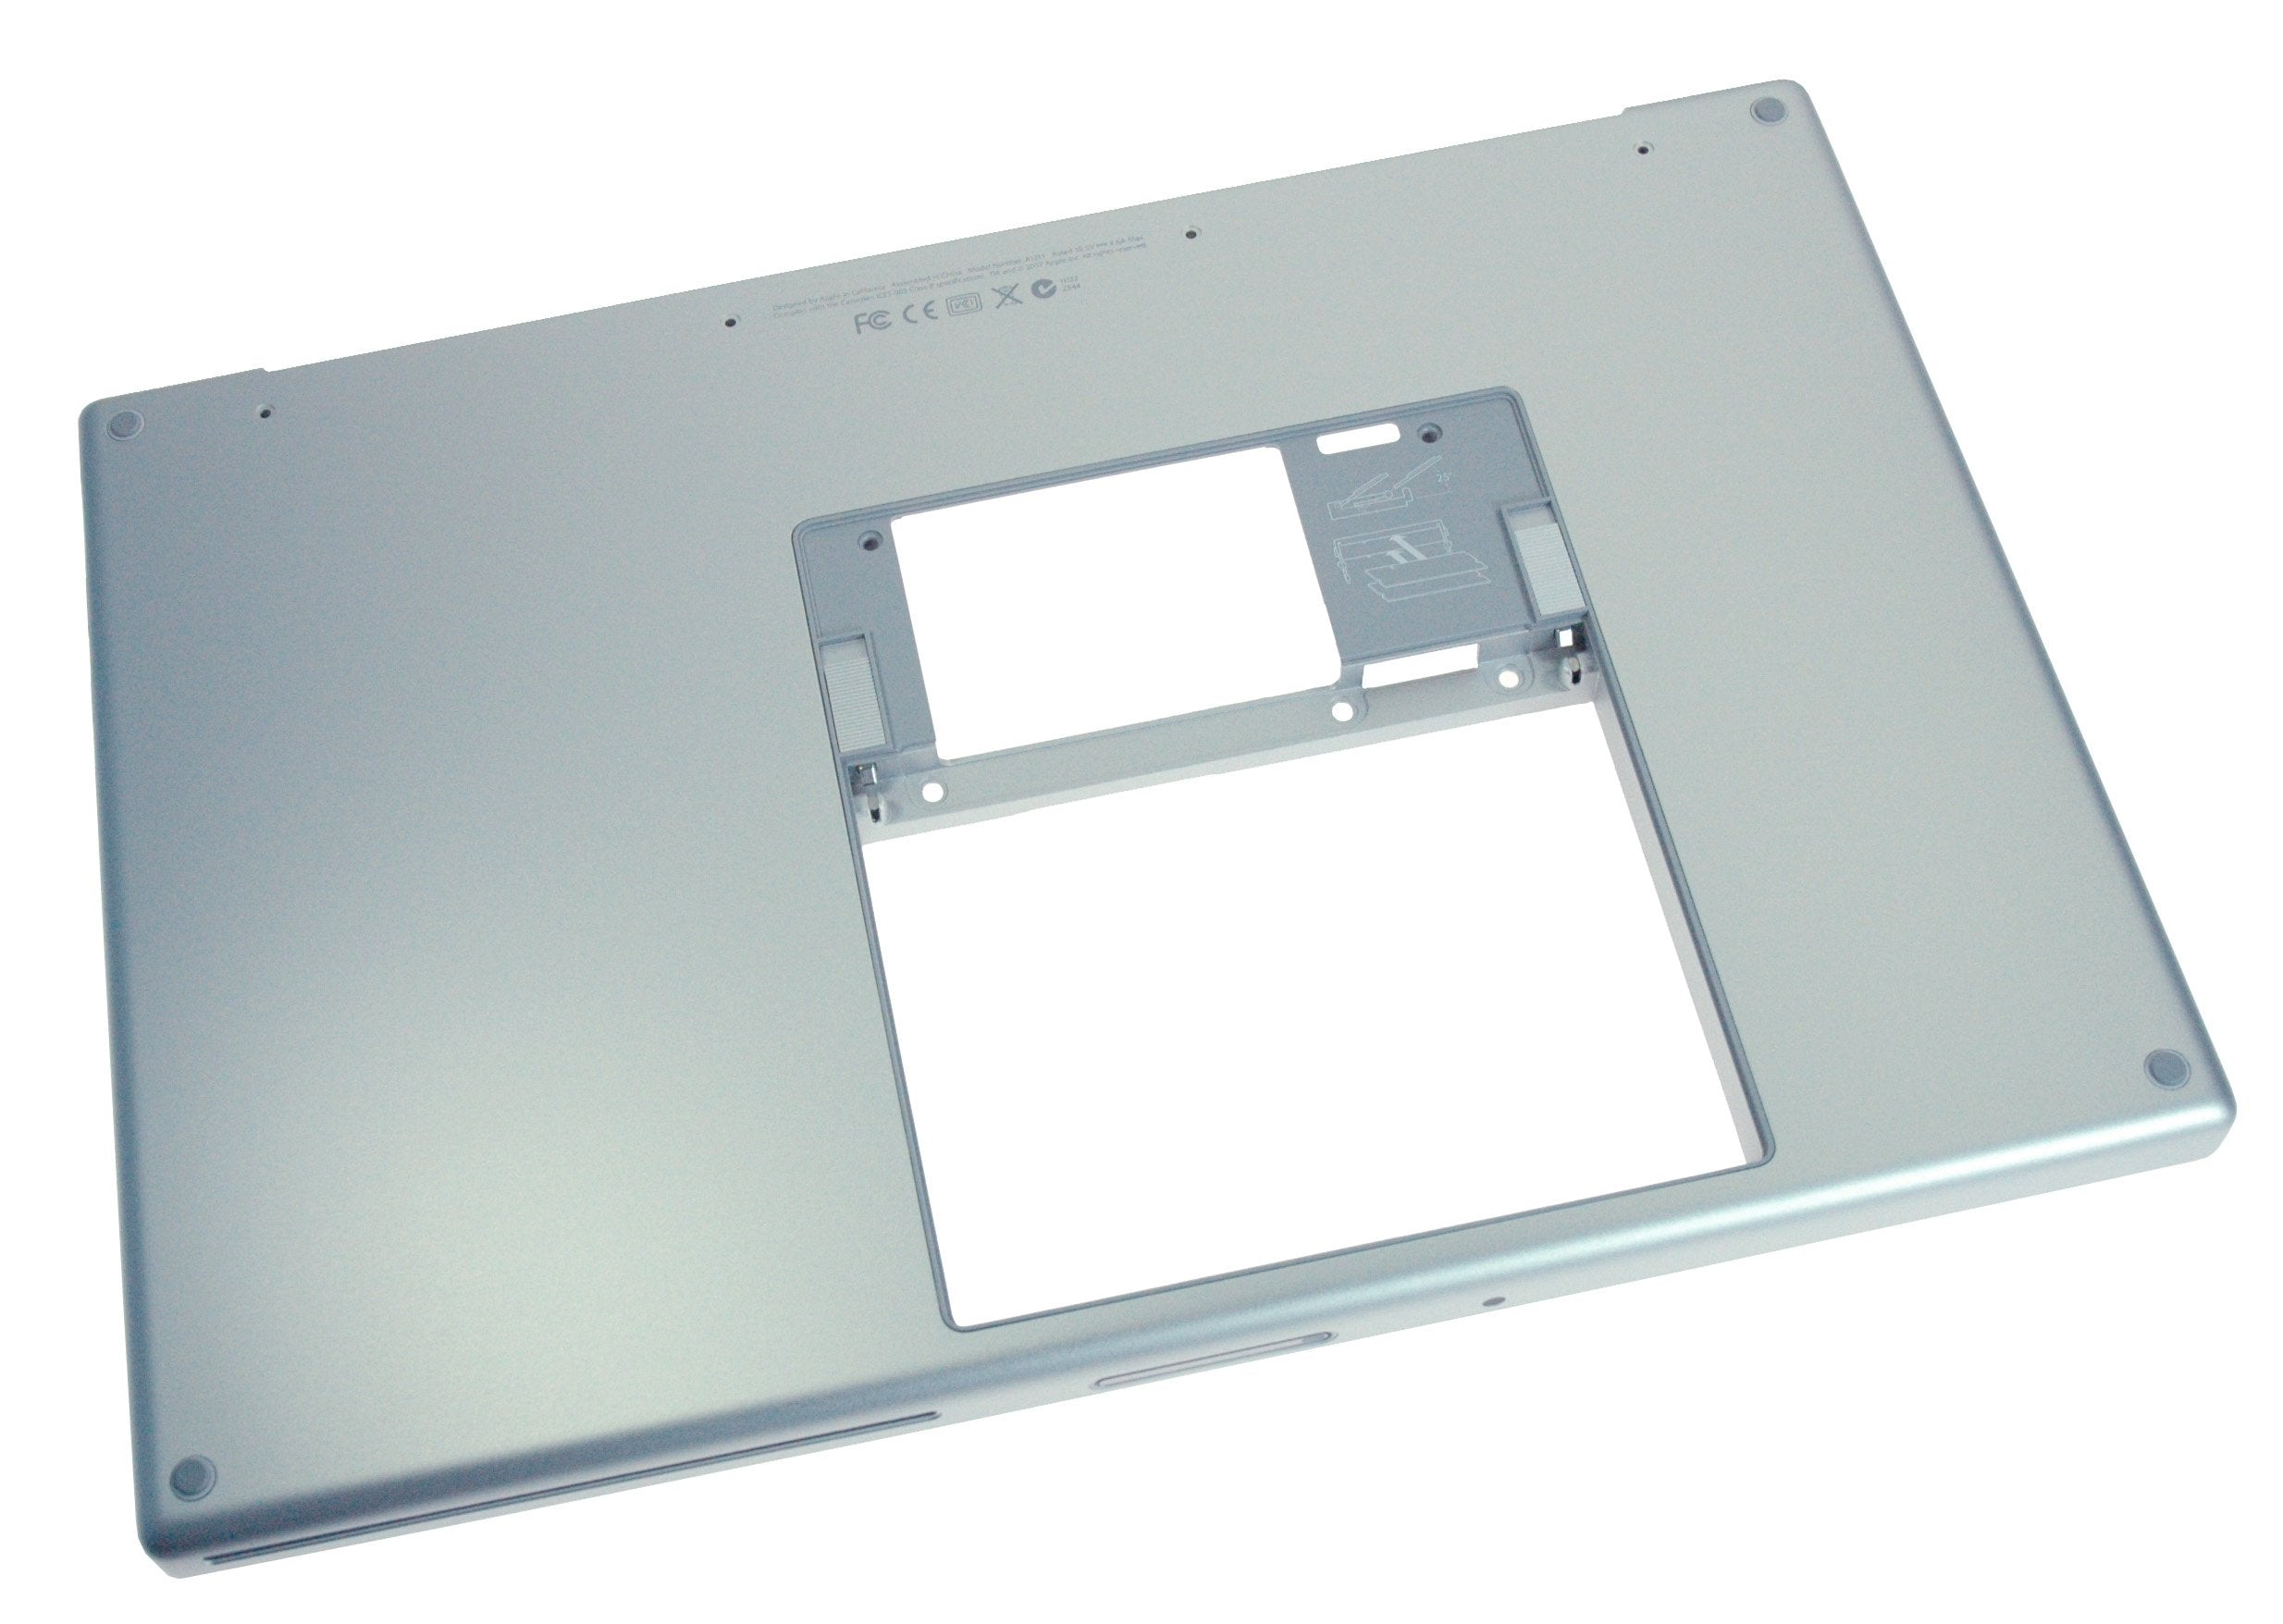 MacBook Pro 15" (Model A1211) Lower Case